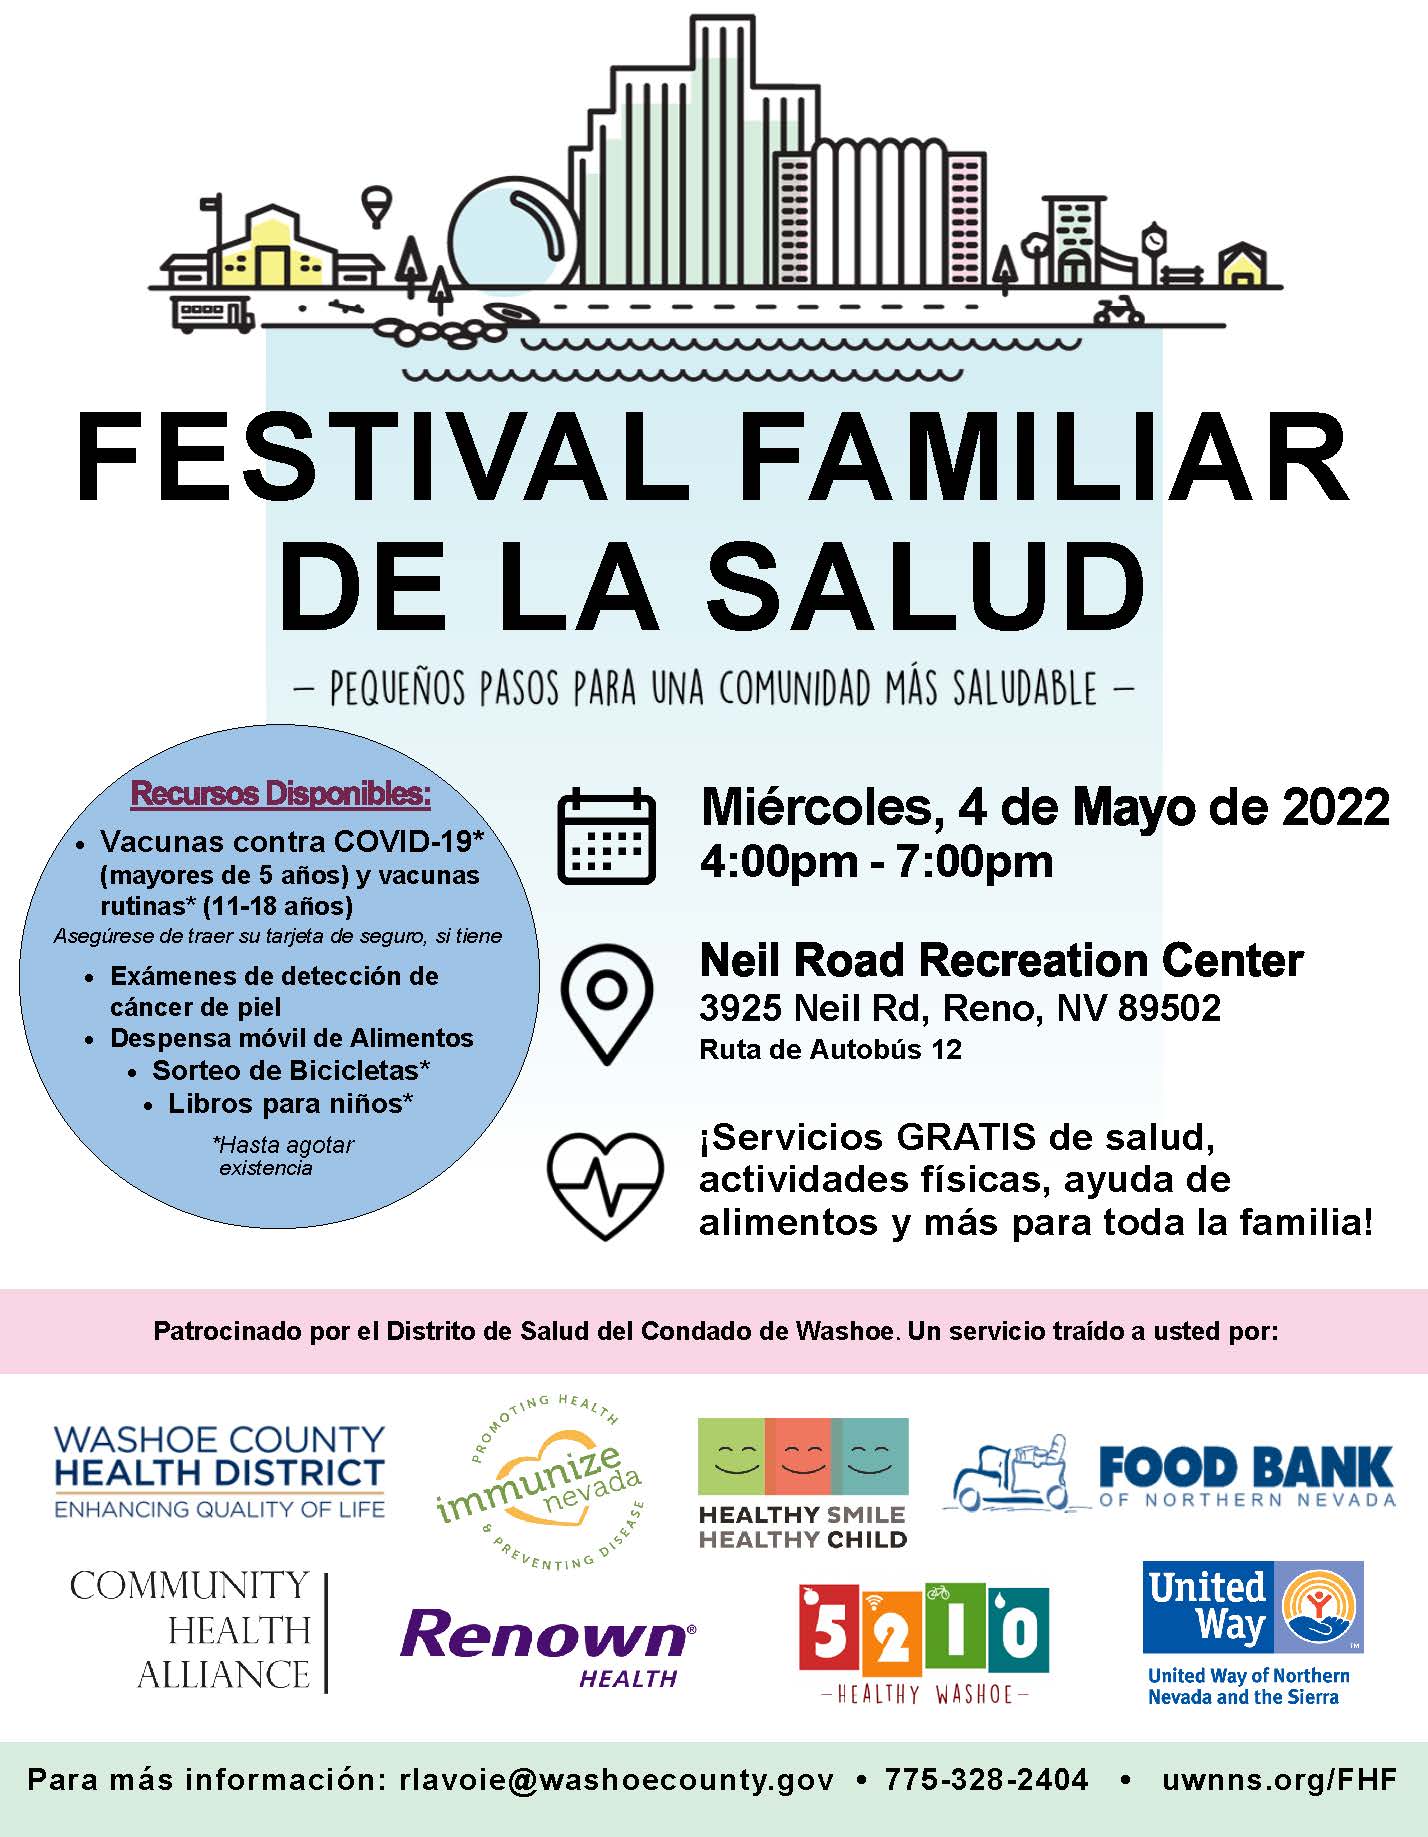 Family Health Festival